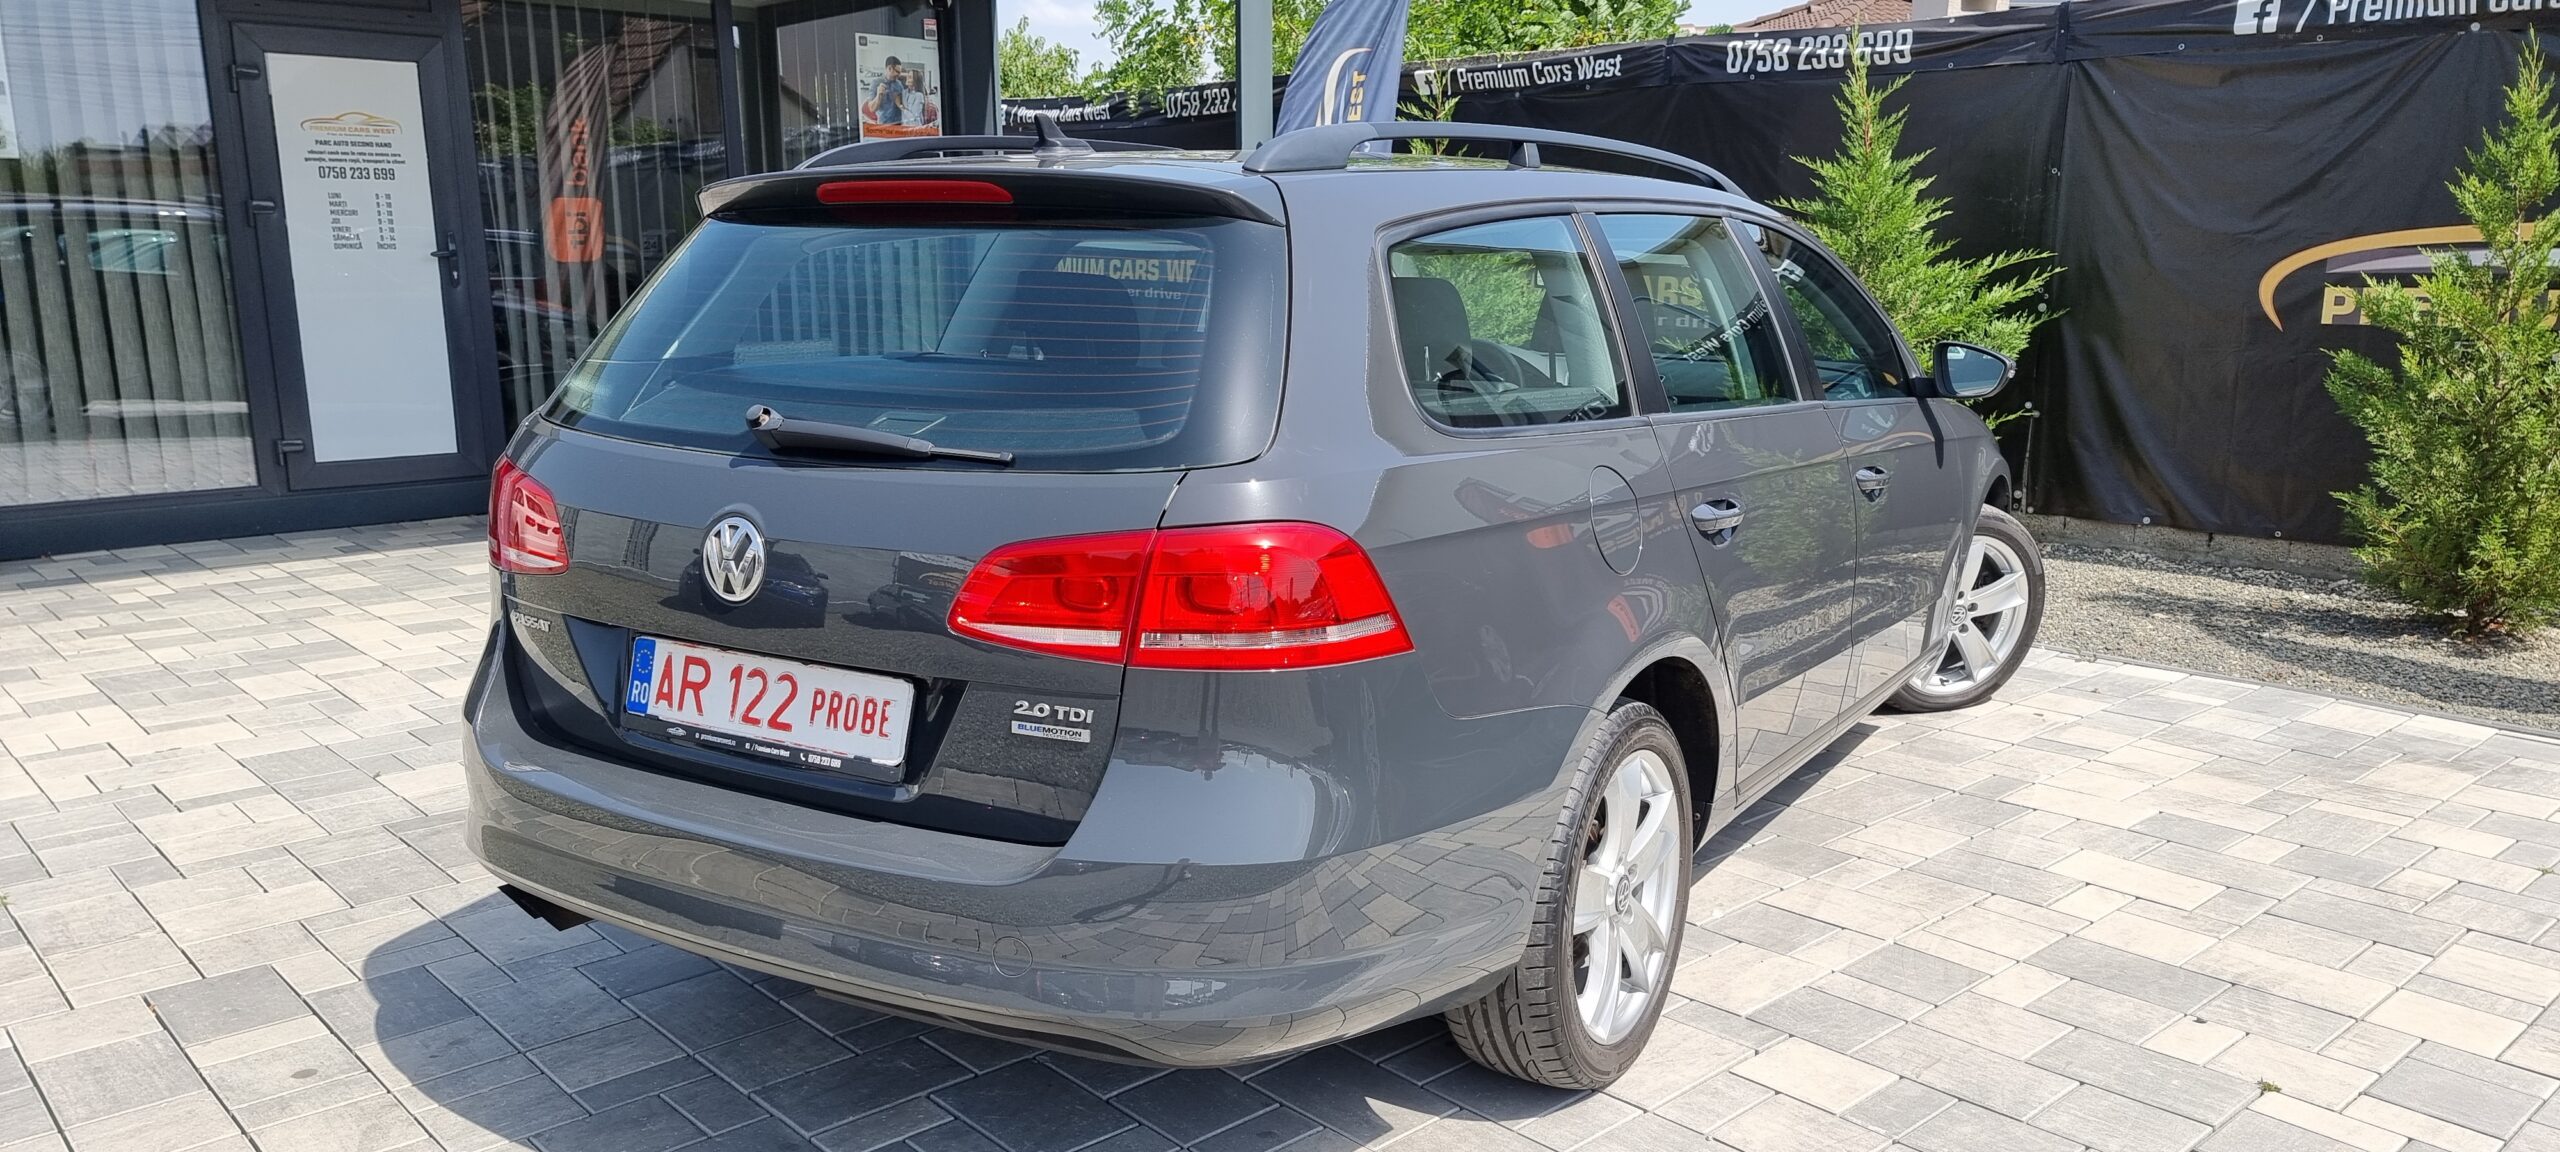 VW PASSAT DSG, 2.0 TDI, 140 CP, EURO 5, AN 2011